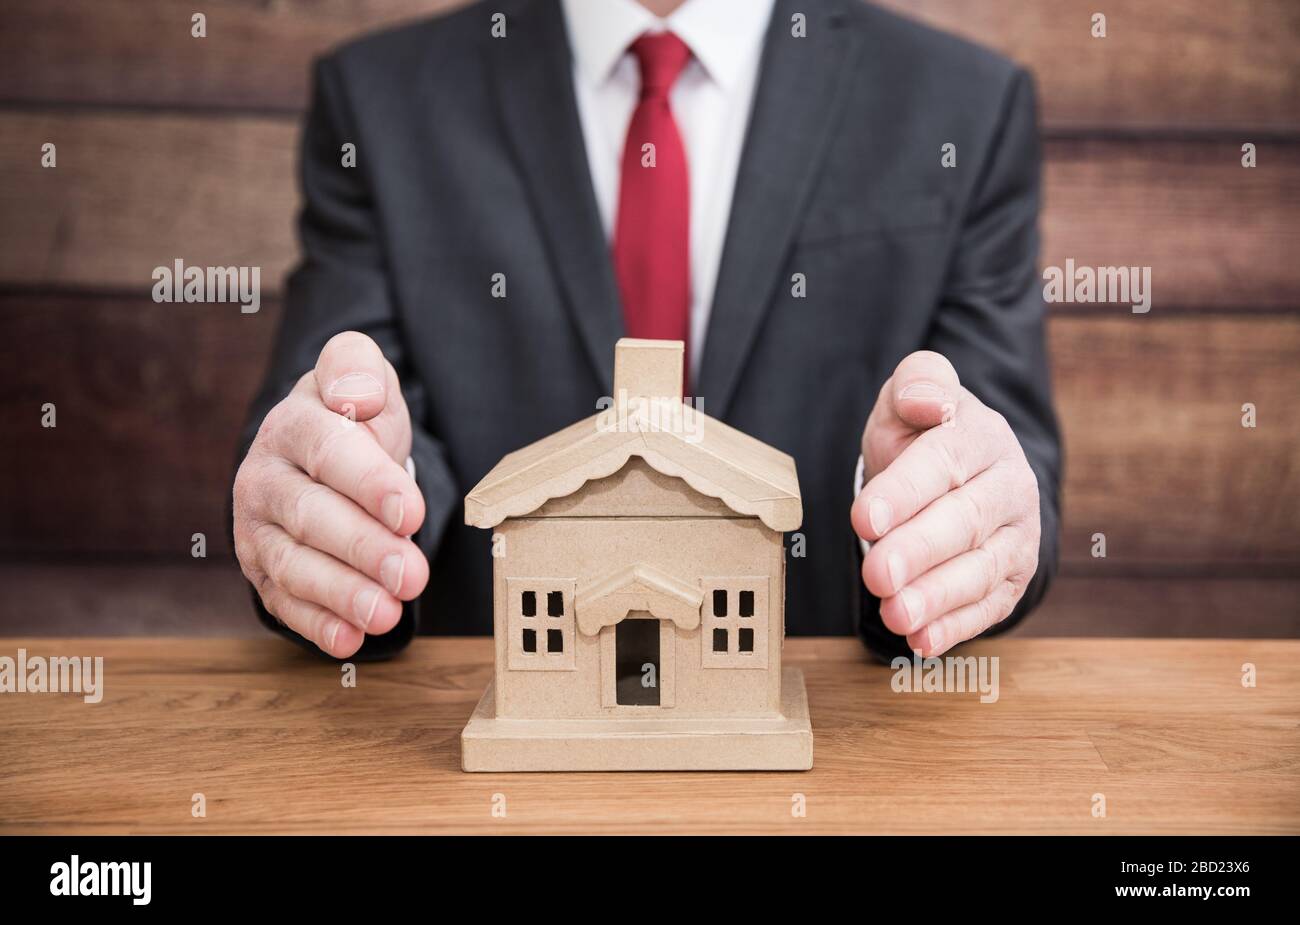 Ein Haus- oder Wohnungskonzept eines Geschäftsmannes wie eines Hypothekenanbieters oder einer Hausversicherung, die ein Haus oder Haus schützt, indem er seine Hände um es herum wickelt Stockfoto